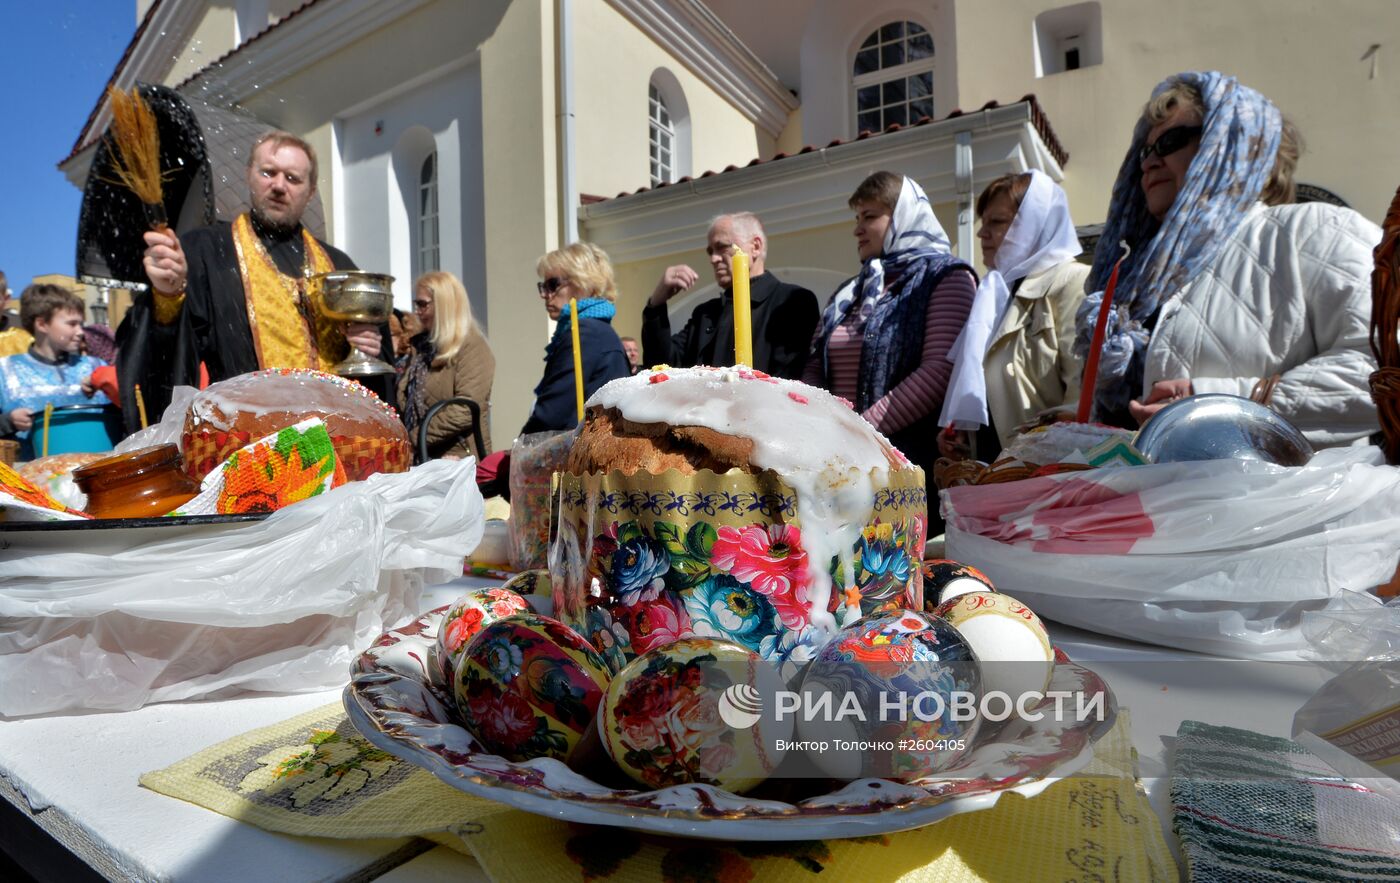 Освящение пасхальных куличей в Великую субботу в Белоруссии